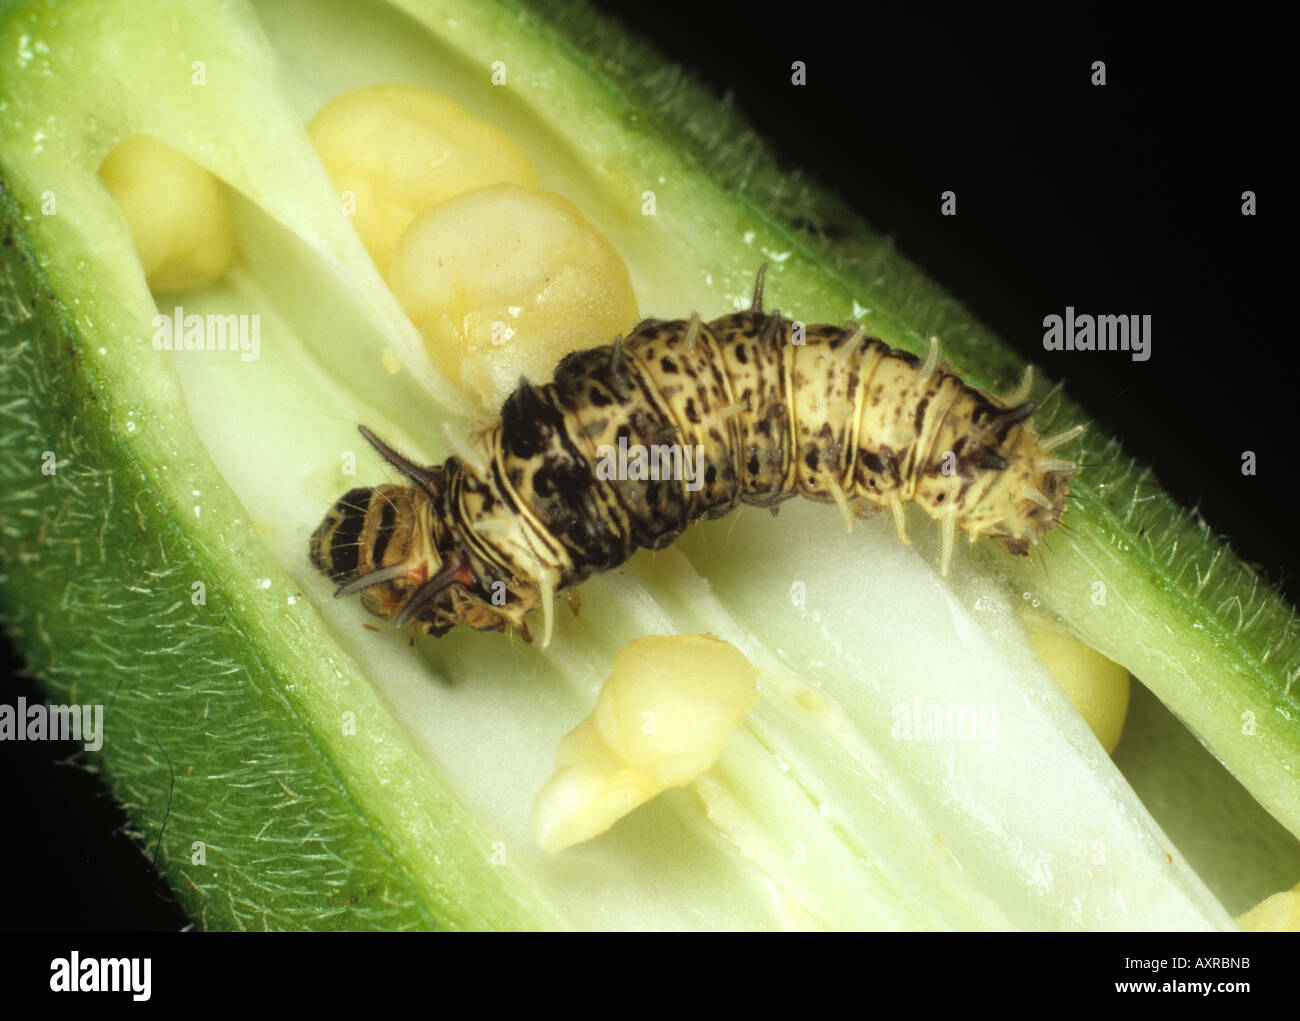 A spiny bollworm Earias biplaga on okra fruit Stock Photo